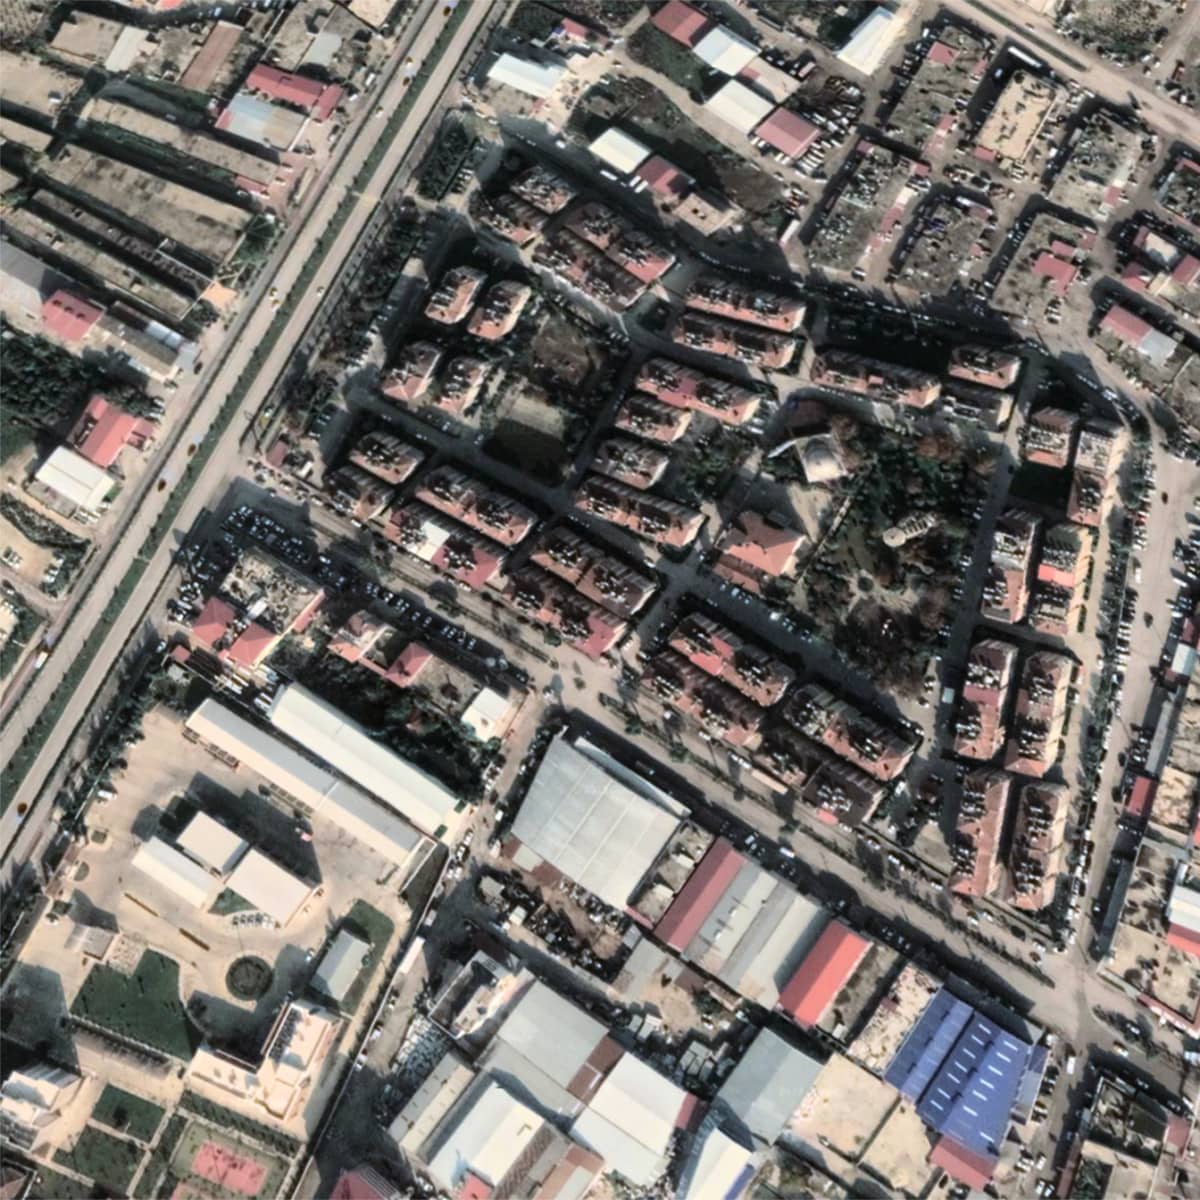 Google Earthin kuva Antakyan kaupungista Turkista ajalta ennen maanjäristystä. Talot ovat vielä ehjiä.